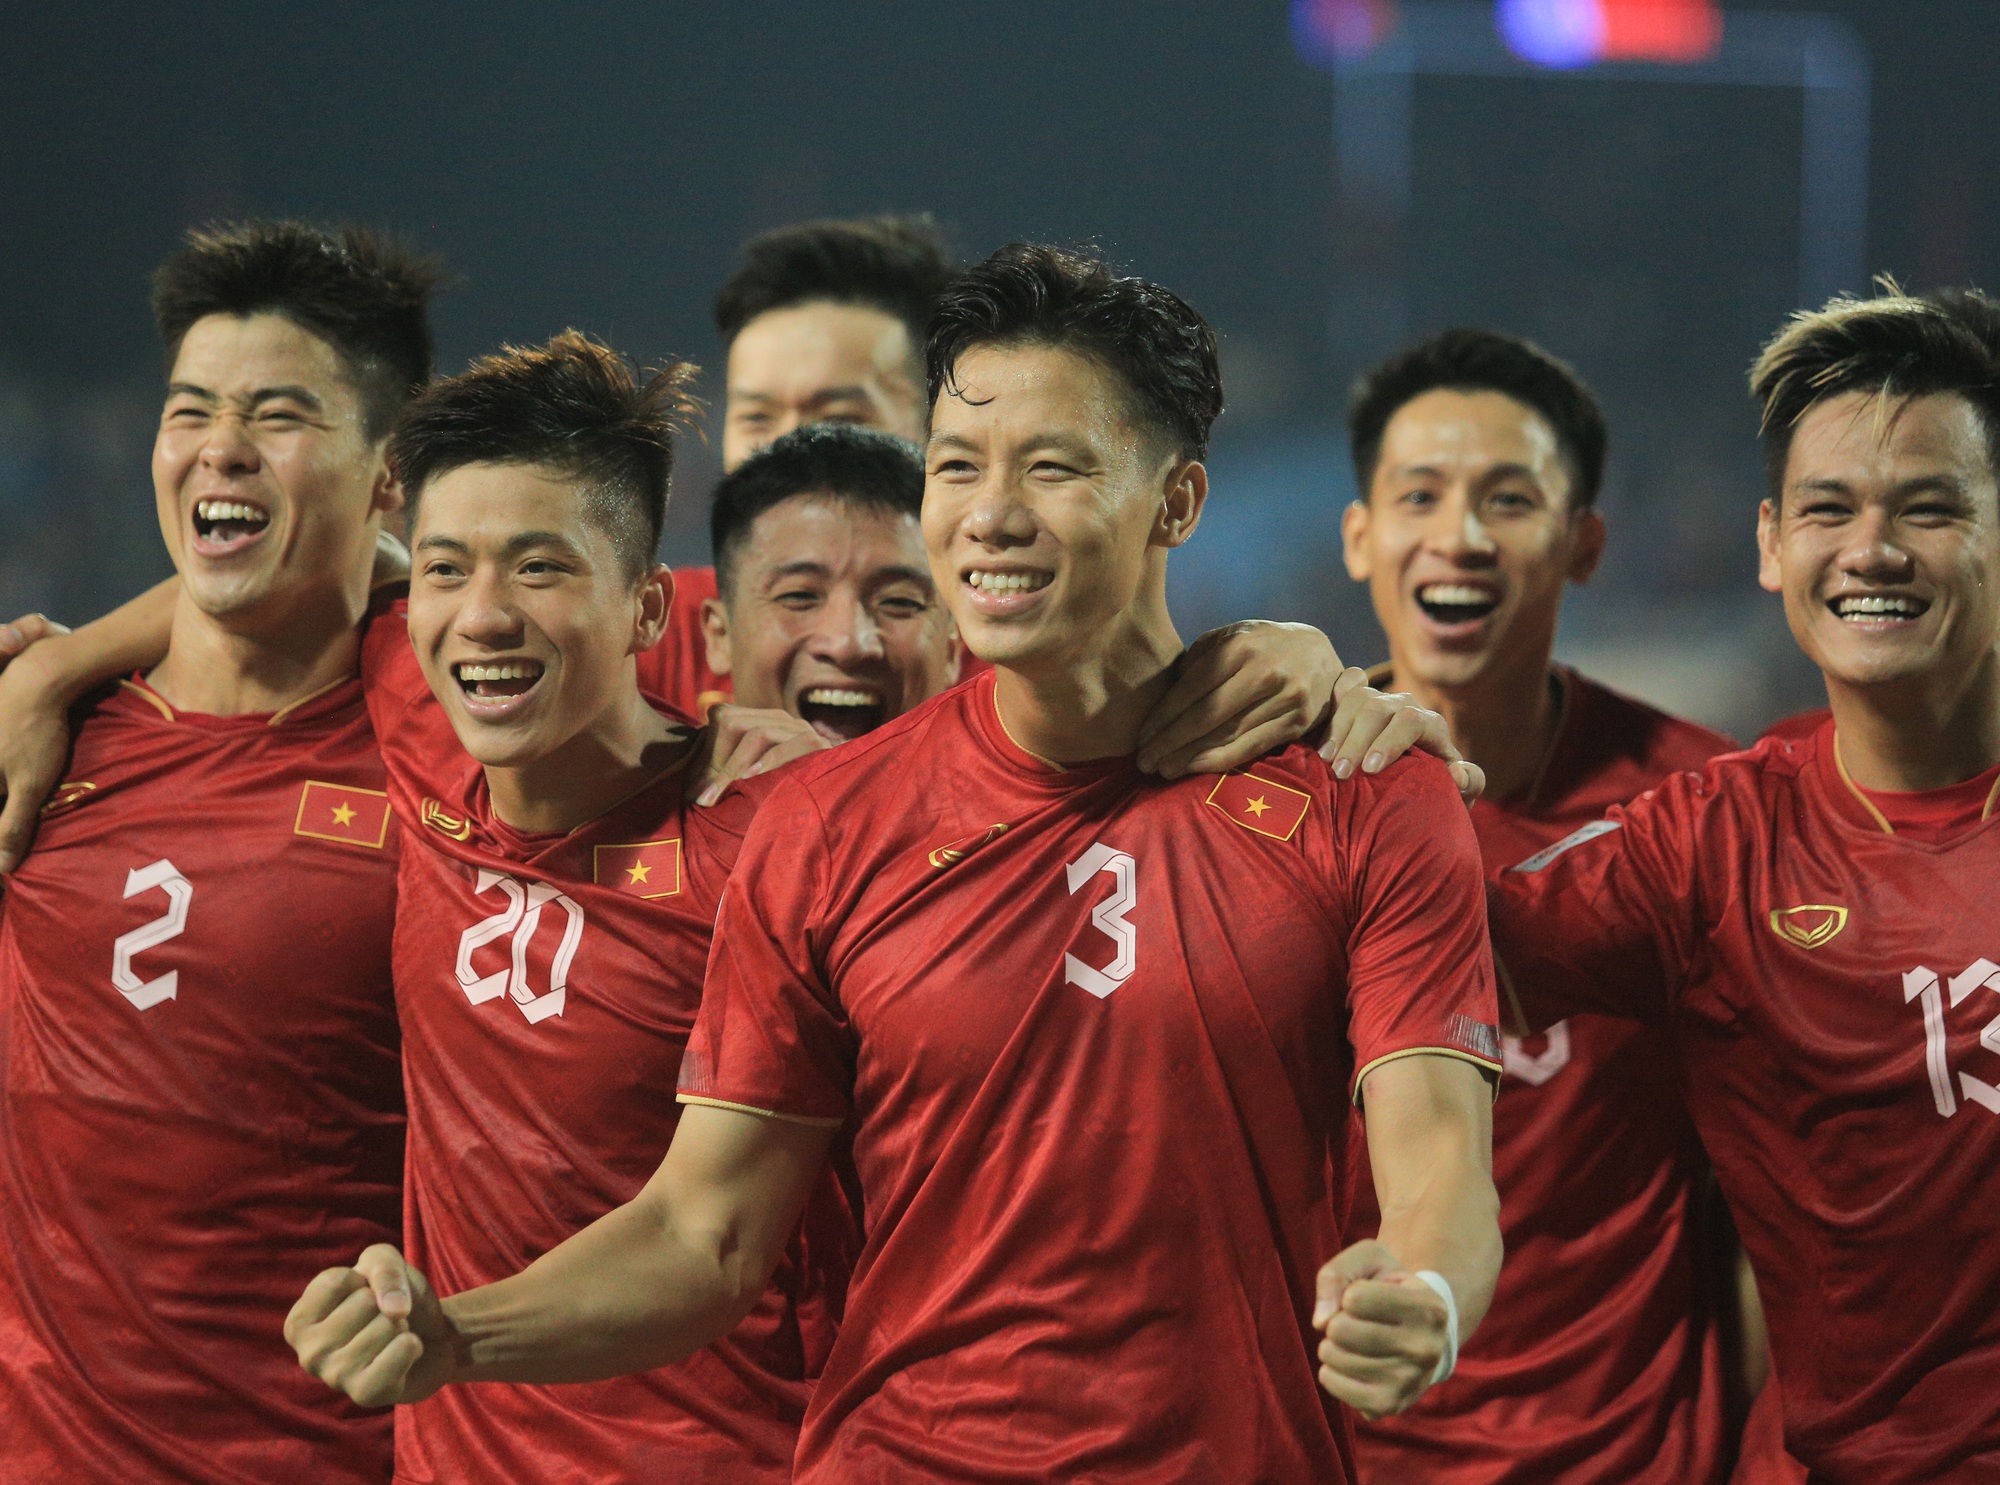 Quế Ngọc Hải ăn mừng theo phong cách của Ronaldo khi ghi bàn cho tuyển Việt Nam - Ảnh 4.